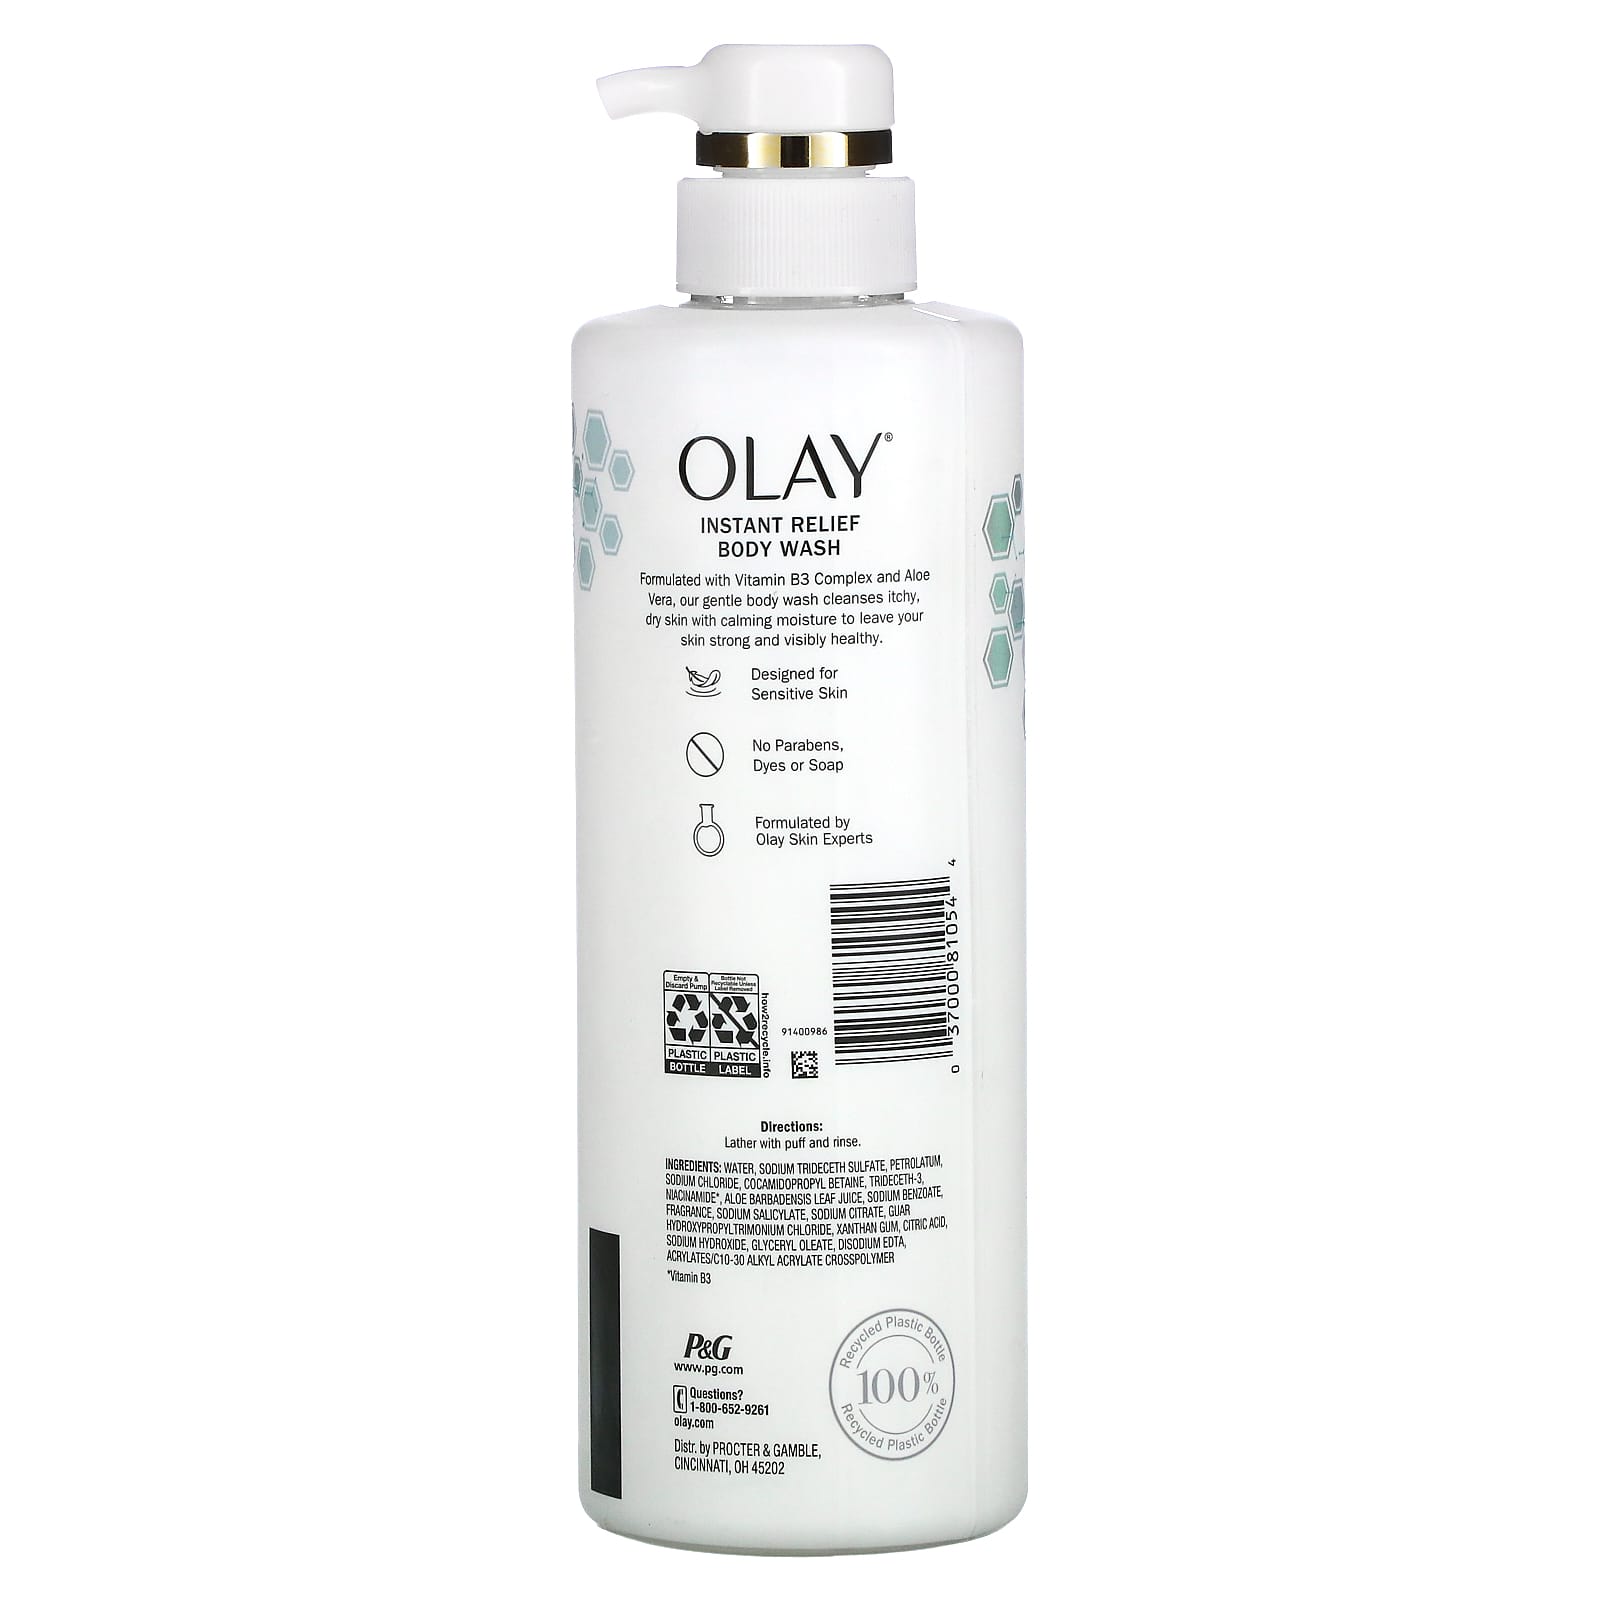 olay-instant-relief-body-wash-itchy-dry-skin-17-9-fl-oz-530-ml